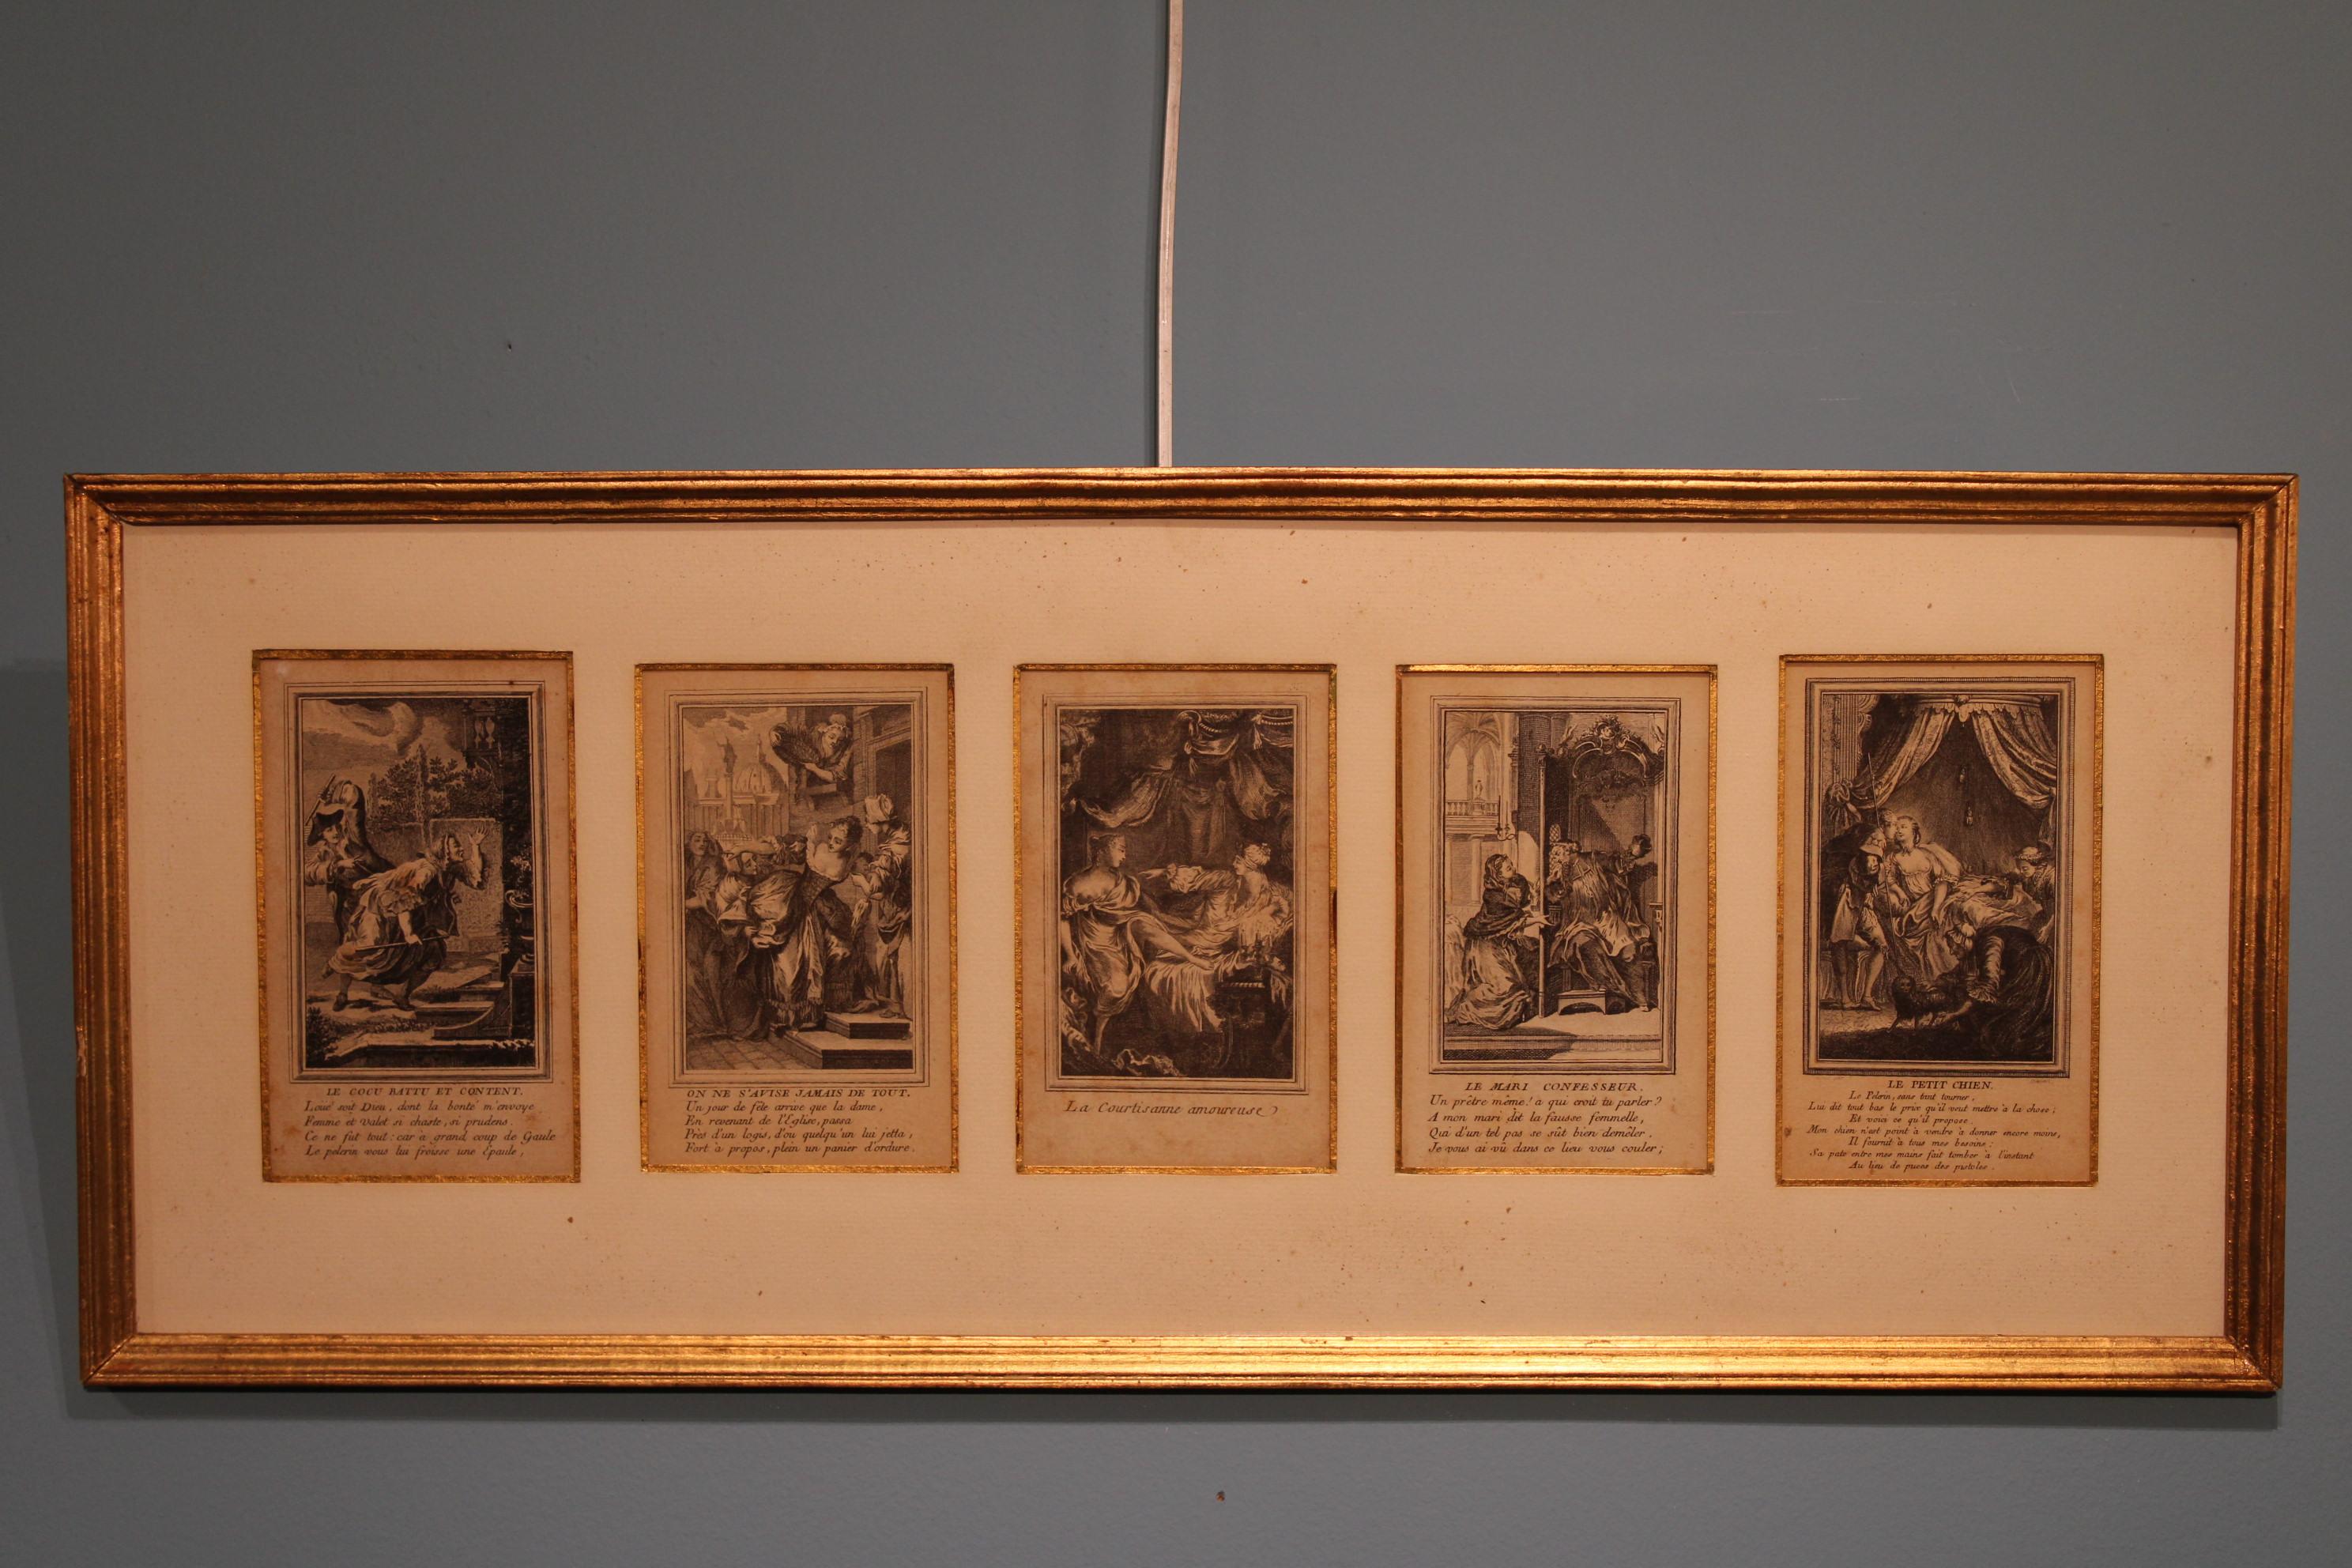 5 Stiche gerahmt, 18. Jahrhundert.

Maße mit Rahmen: 59 x 24 x 1 cm
Abmessungen der Bilder: 8 x 14 cm.